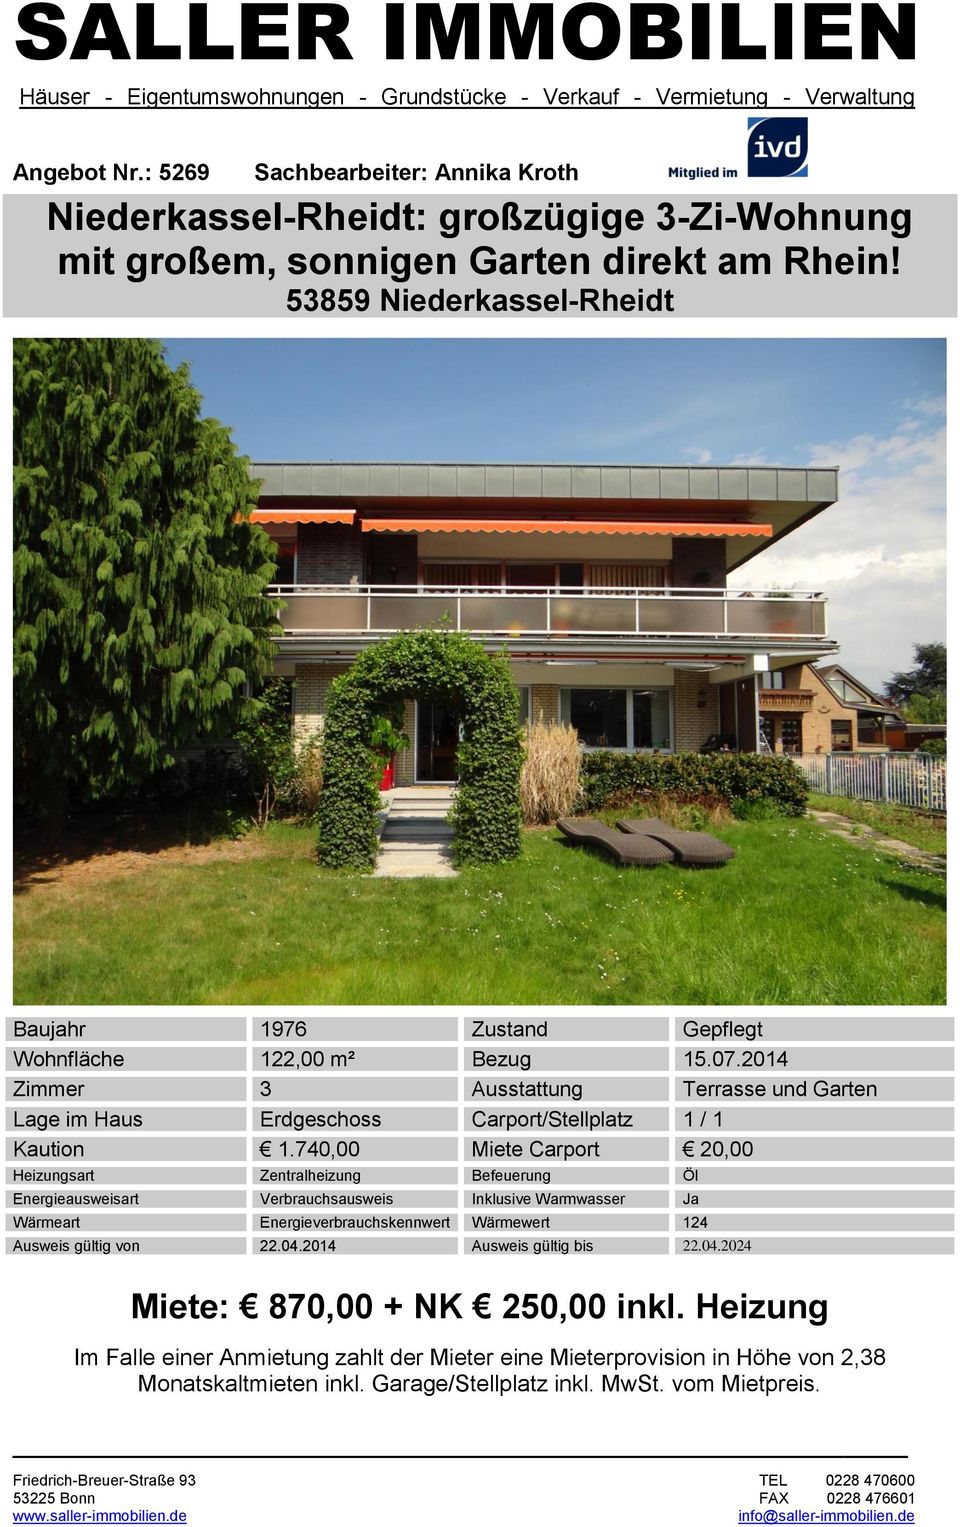 2014 Zimmer 3 Ausstattung Terrasse und Garten Lage im Haus Erdgeschoss Carport/Stellplatz 1 / 1 Kaution 1.